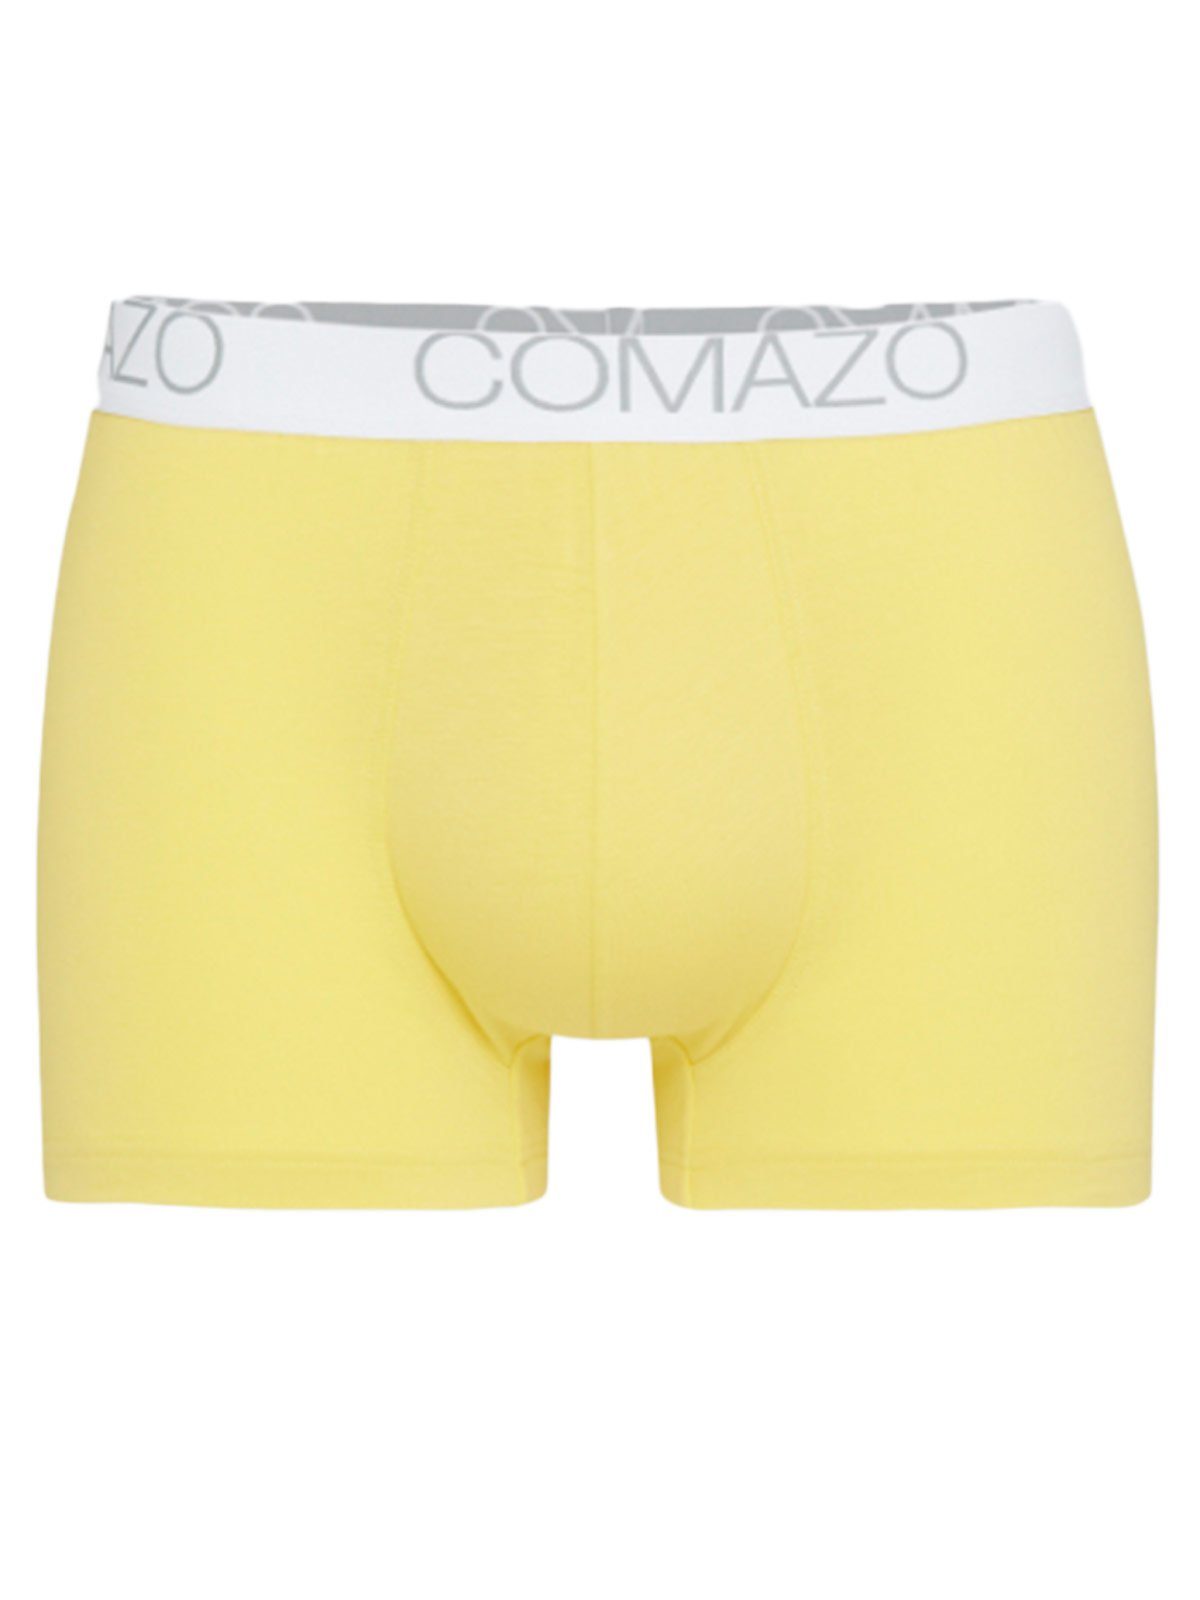 COMAZO Pants Vegan Baumwoll Pants (Stück, yellow 1-St) dark Retro Herren